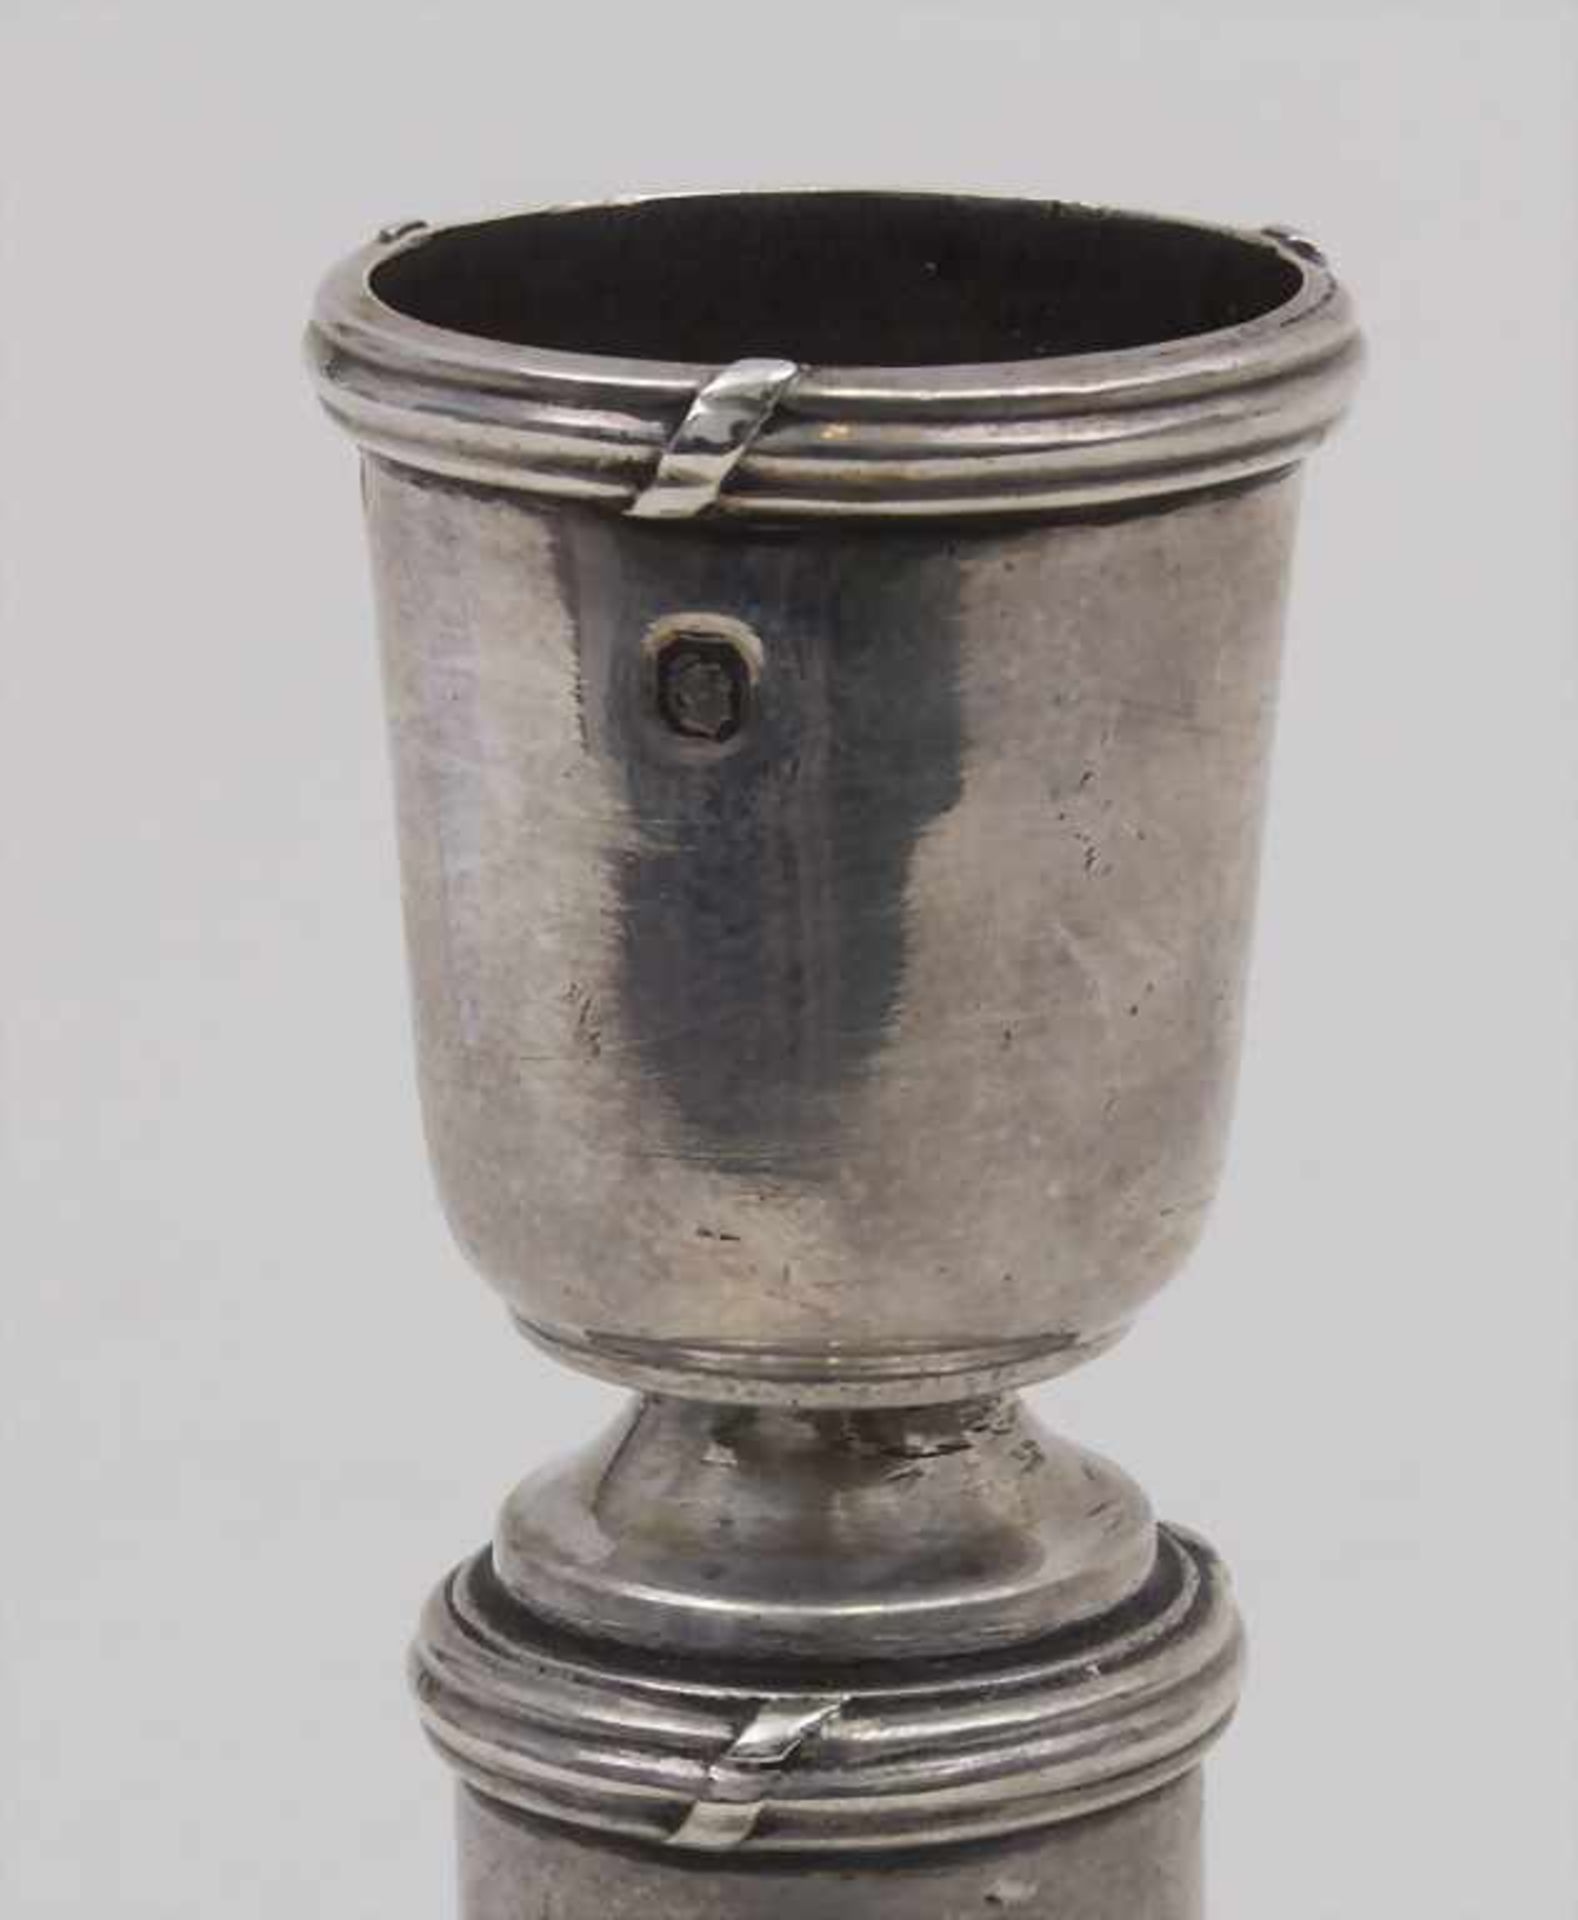 Tischleuchter / A candle holder, Paris, um 1870 Material: 950er Silber, Punzierung: Minerva Kopf, - Bild 2 aus 3